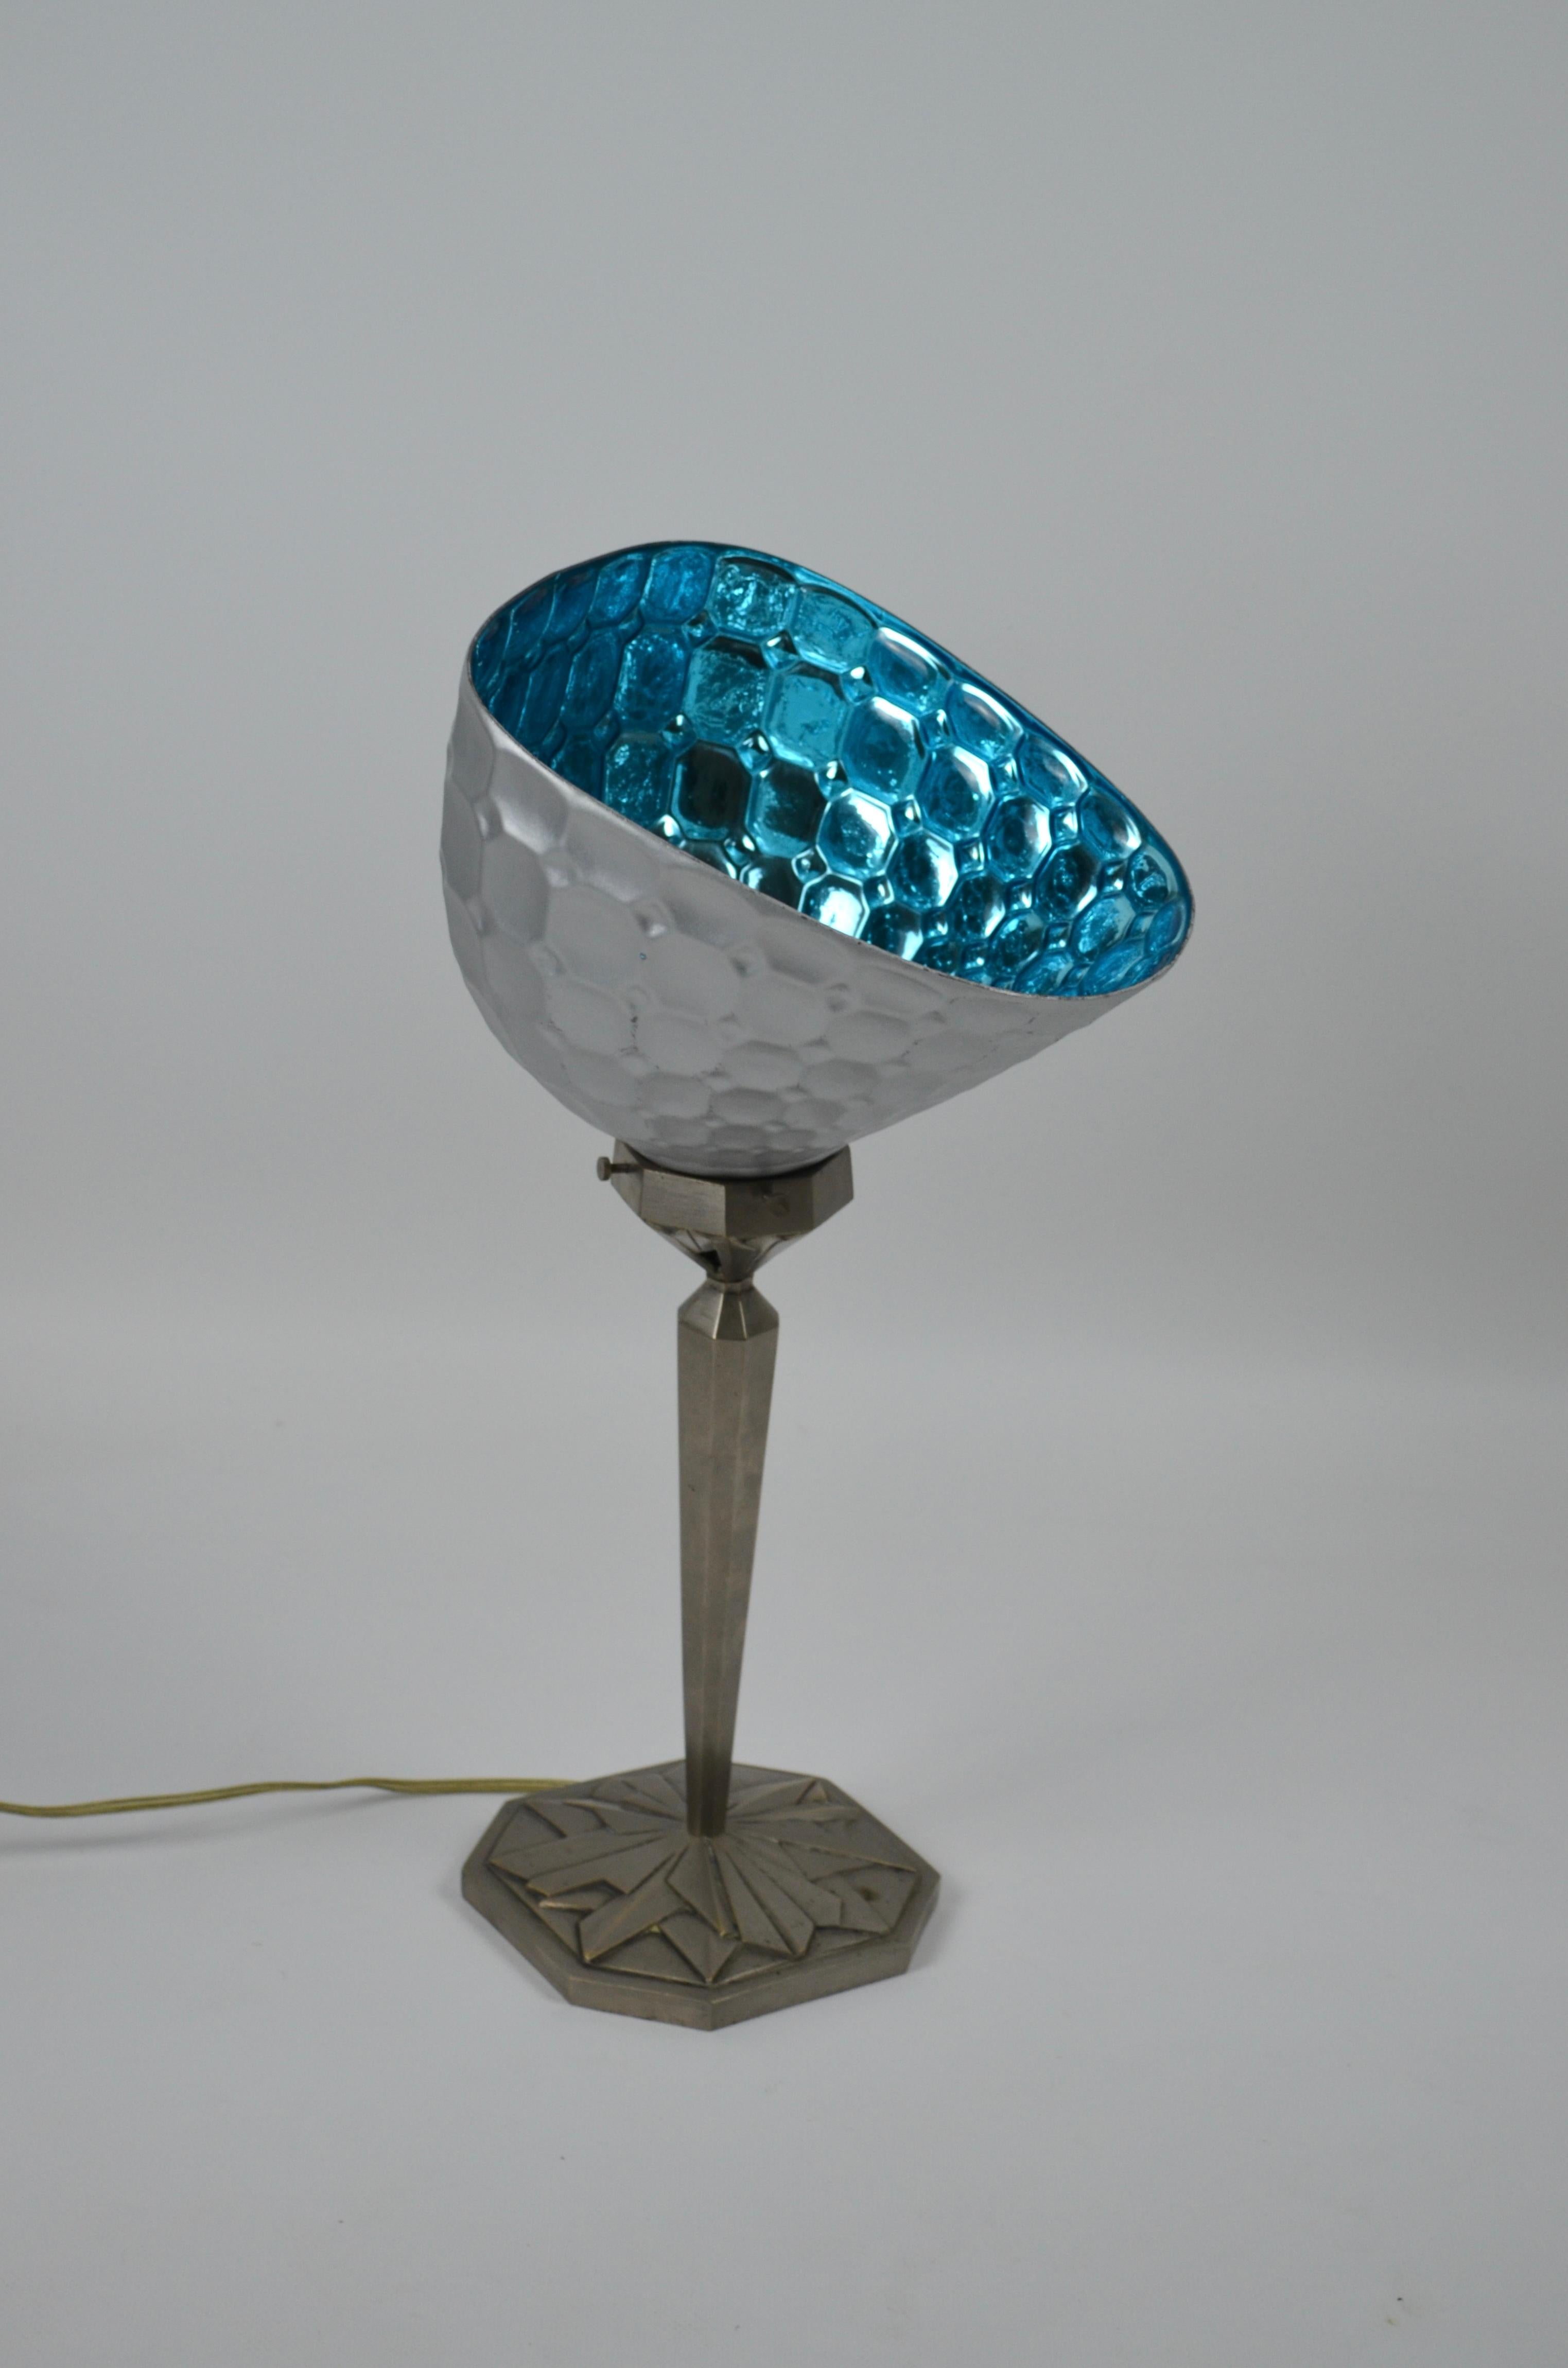 Lampe étonnante fabriquée par le fabricant de lampes français Ilrin dans les années 20.

Incroyable lampe art déco du célèbre fabricant français Ilrin, années 20/30.

Il est composé d'un pied en bronze richement décoré, correspondant au modèle 128